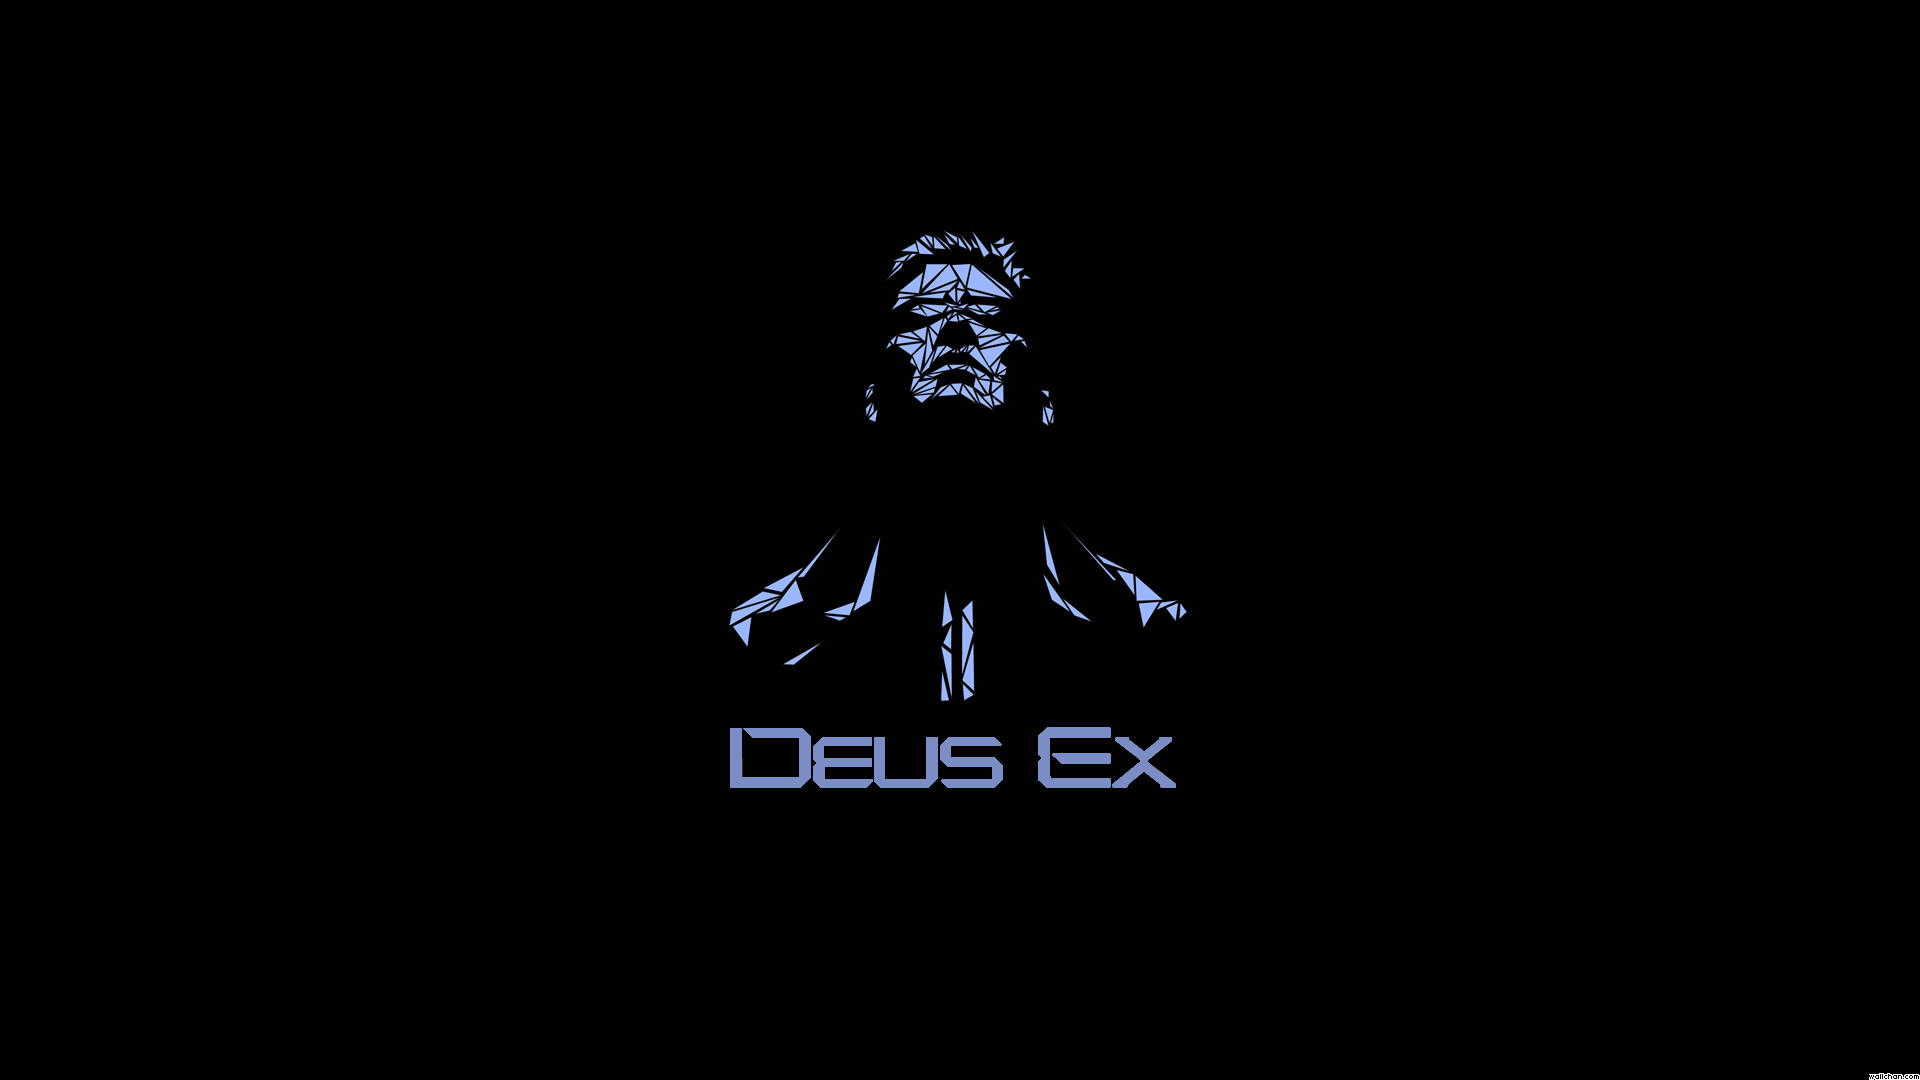 Imágenes De Deus Ex